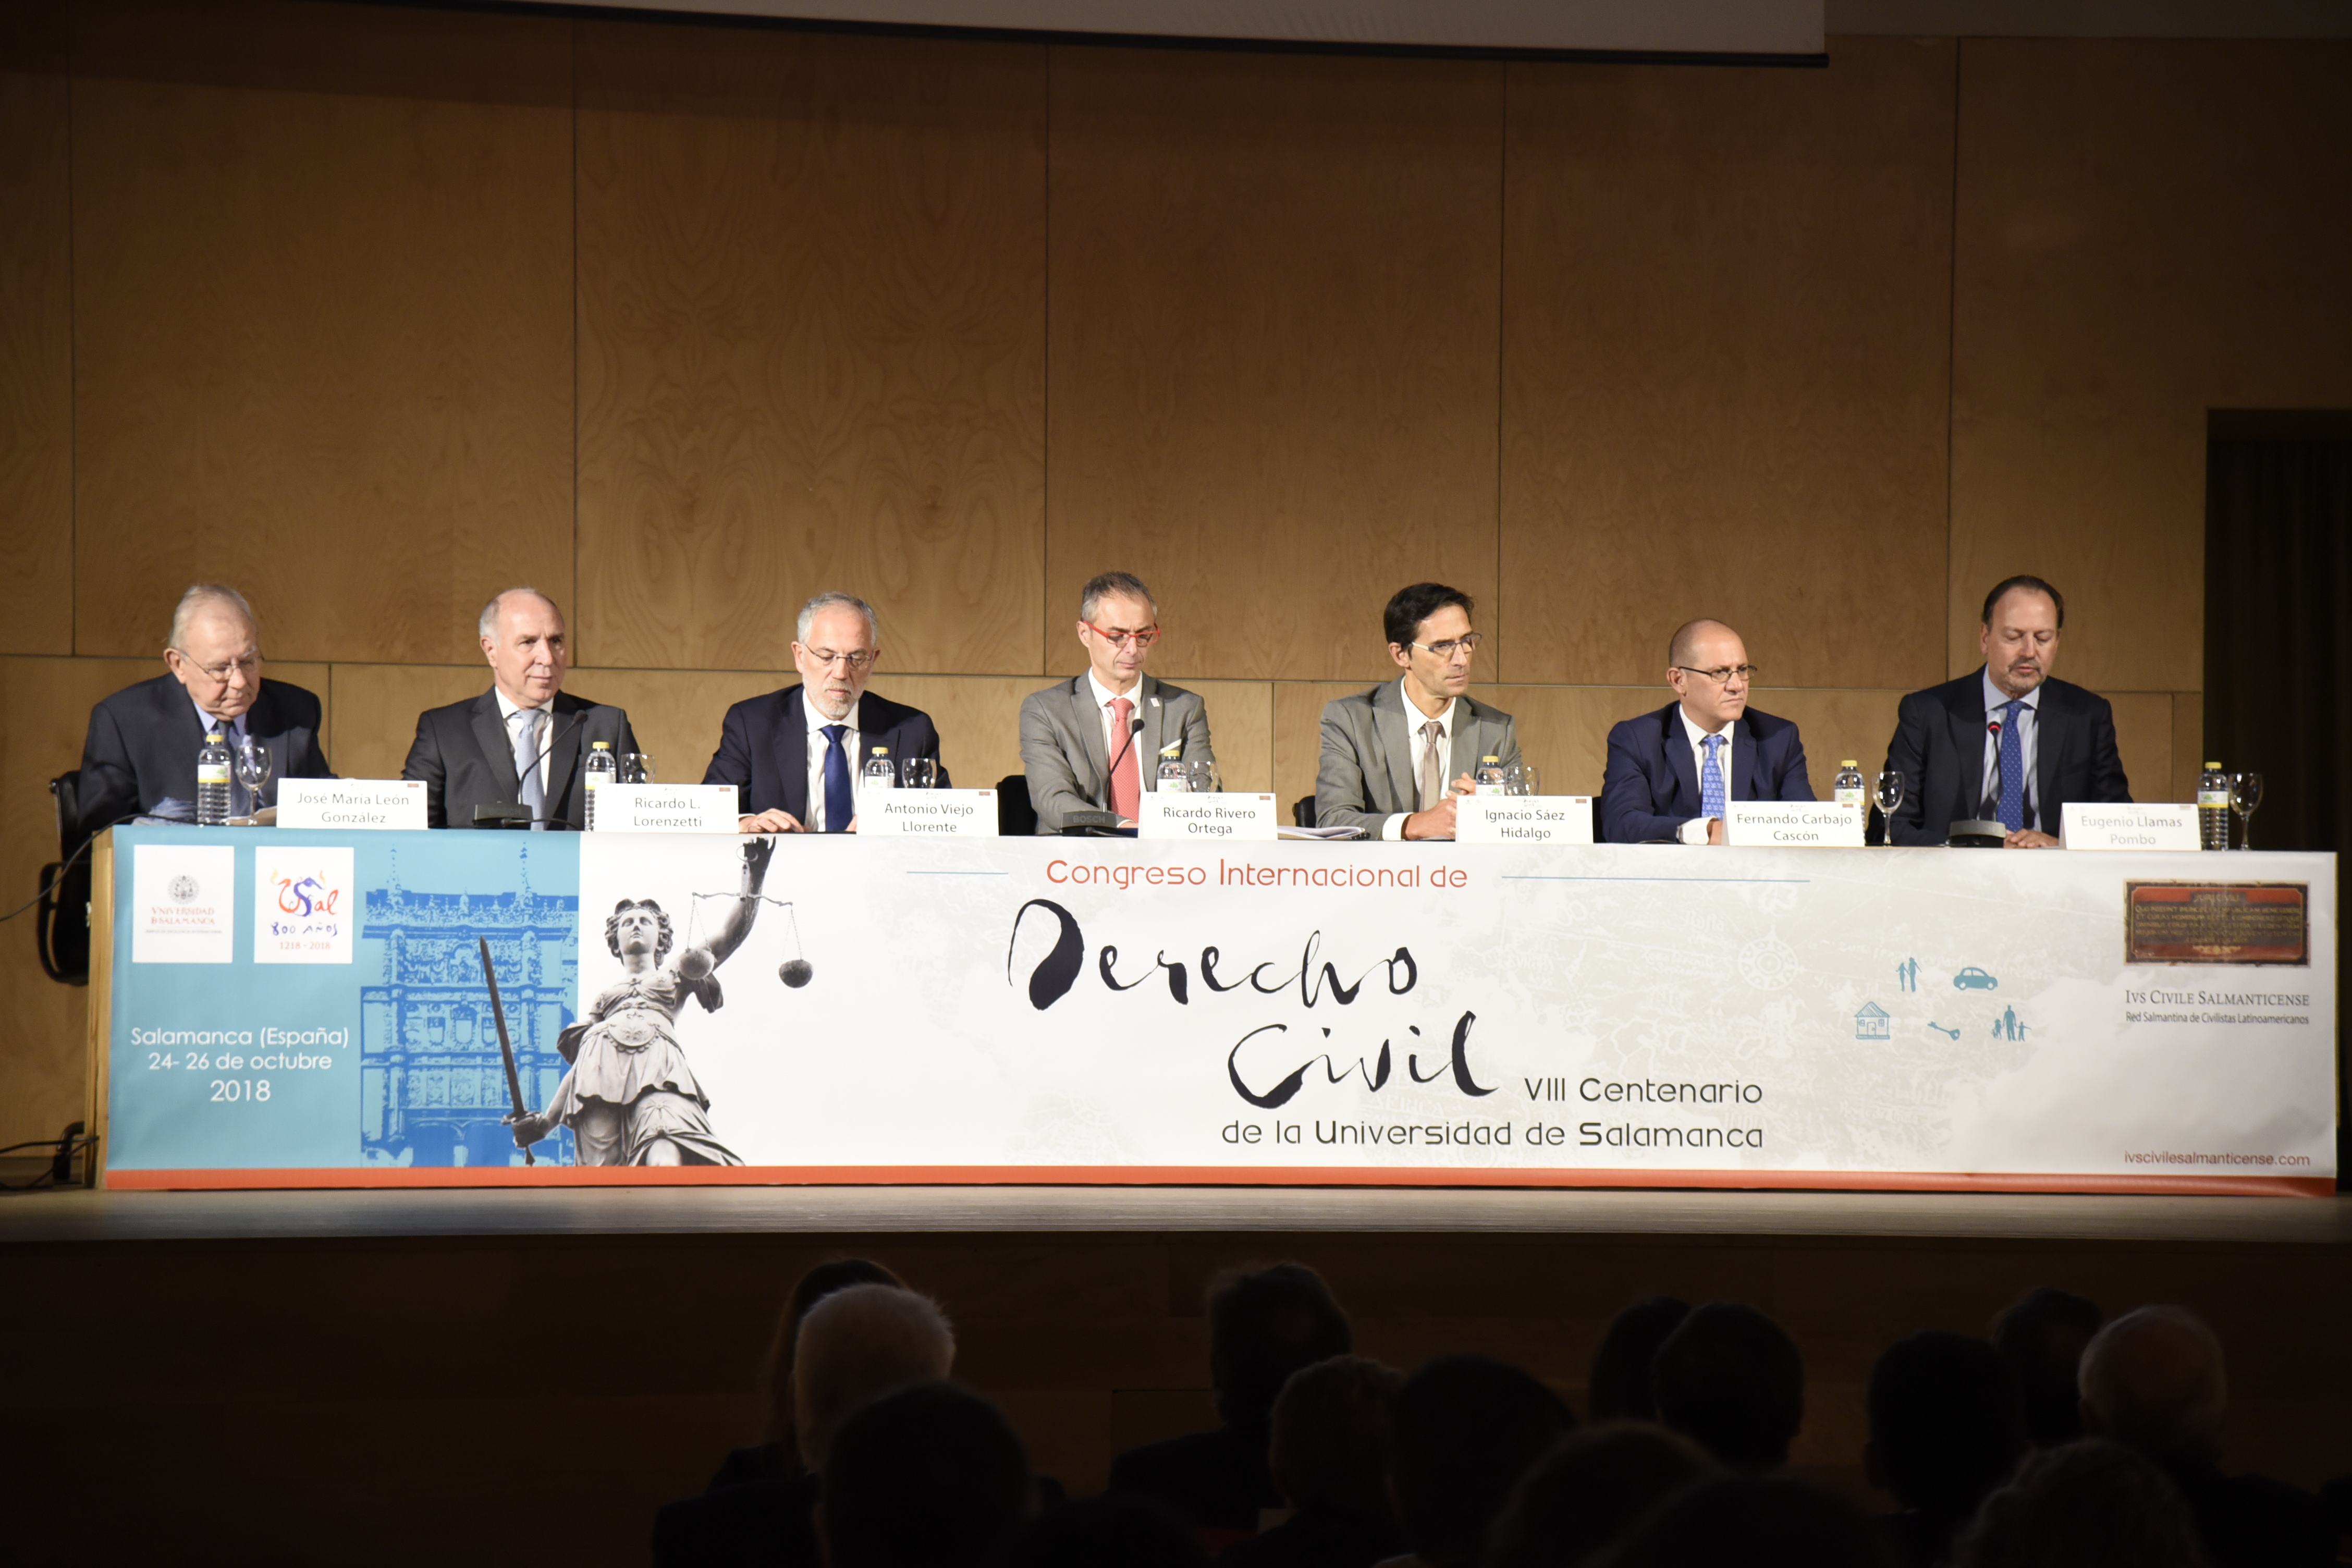 Especialistas de 25 países se citan en la Universidad de Salamanca en el marco del Congreso Internacional de Derecho Civil organizado con motivo del VIII Centenario